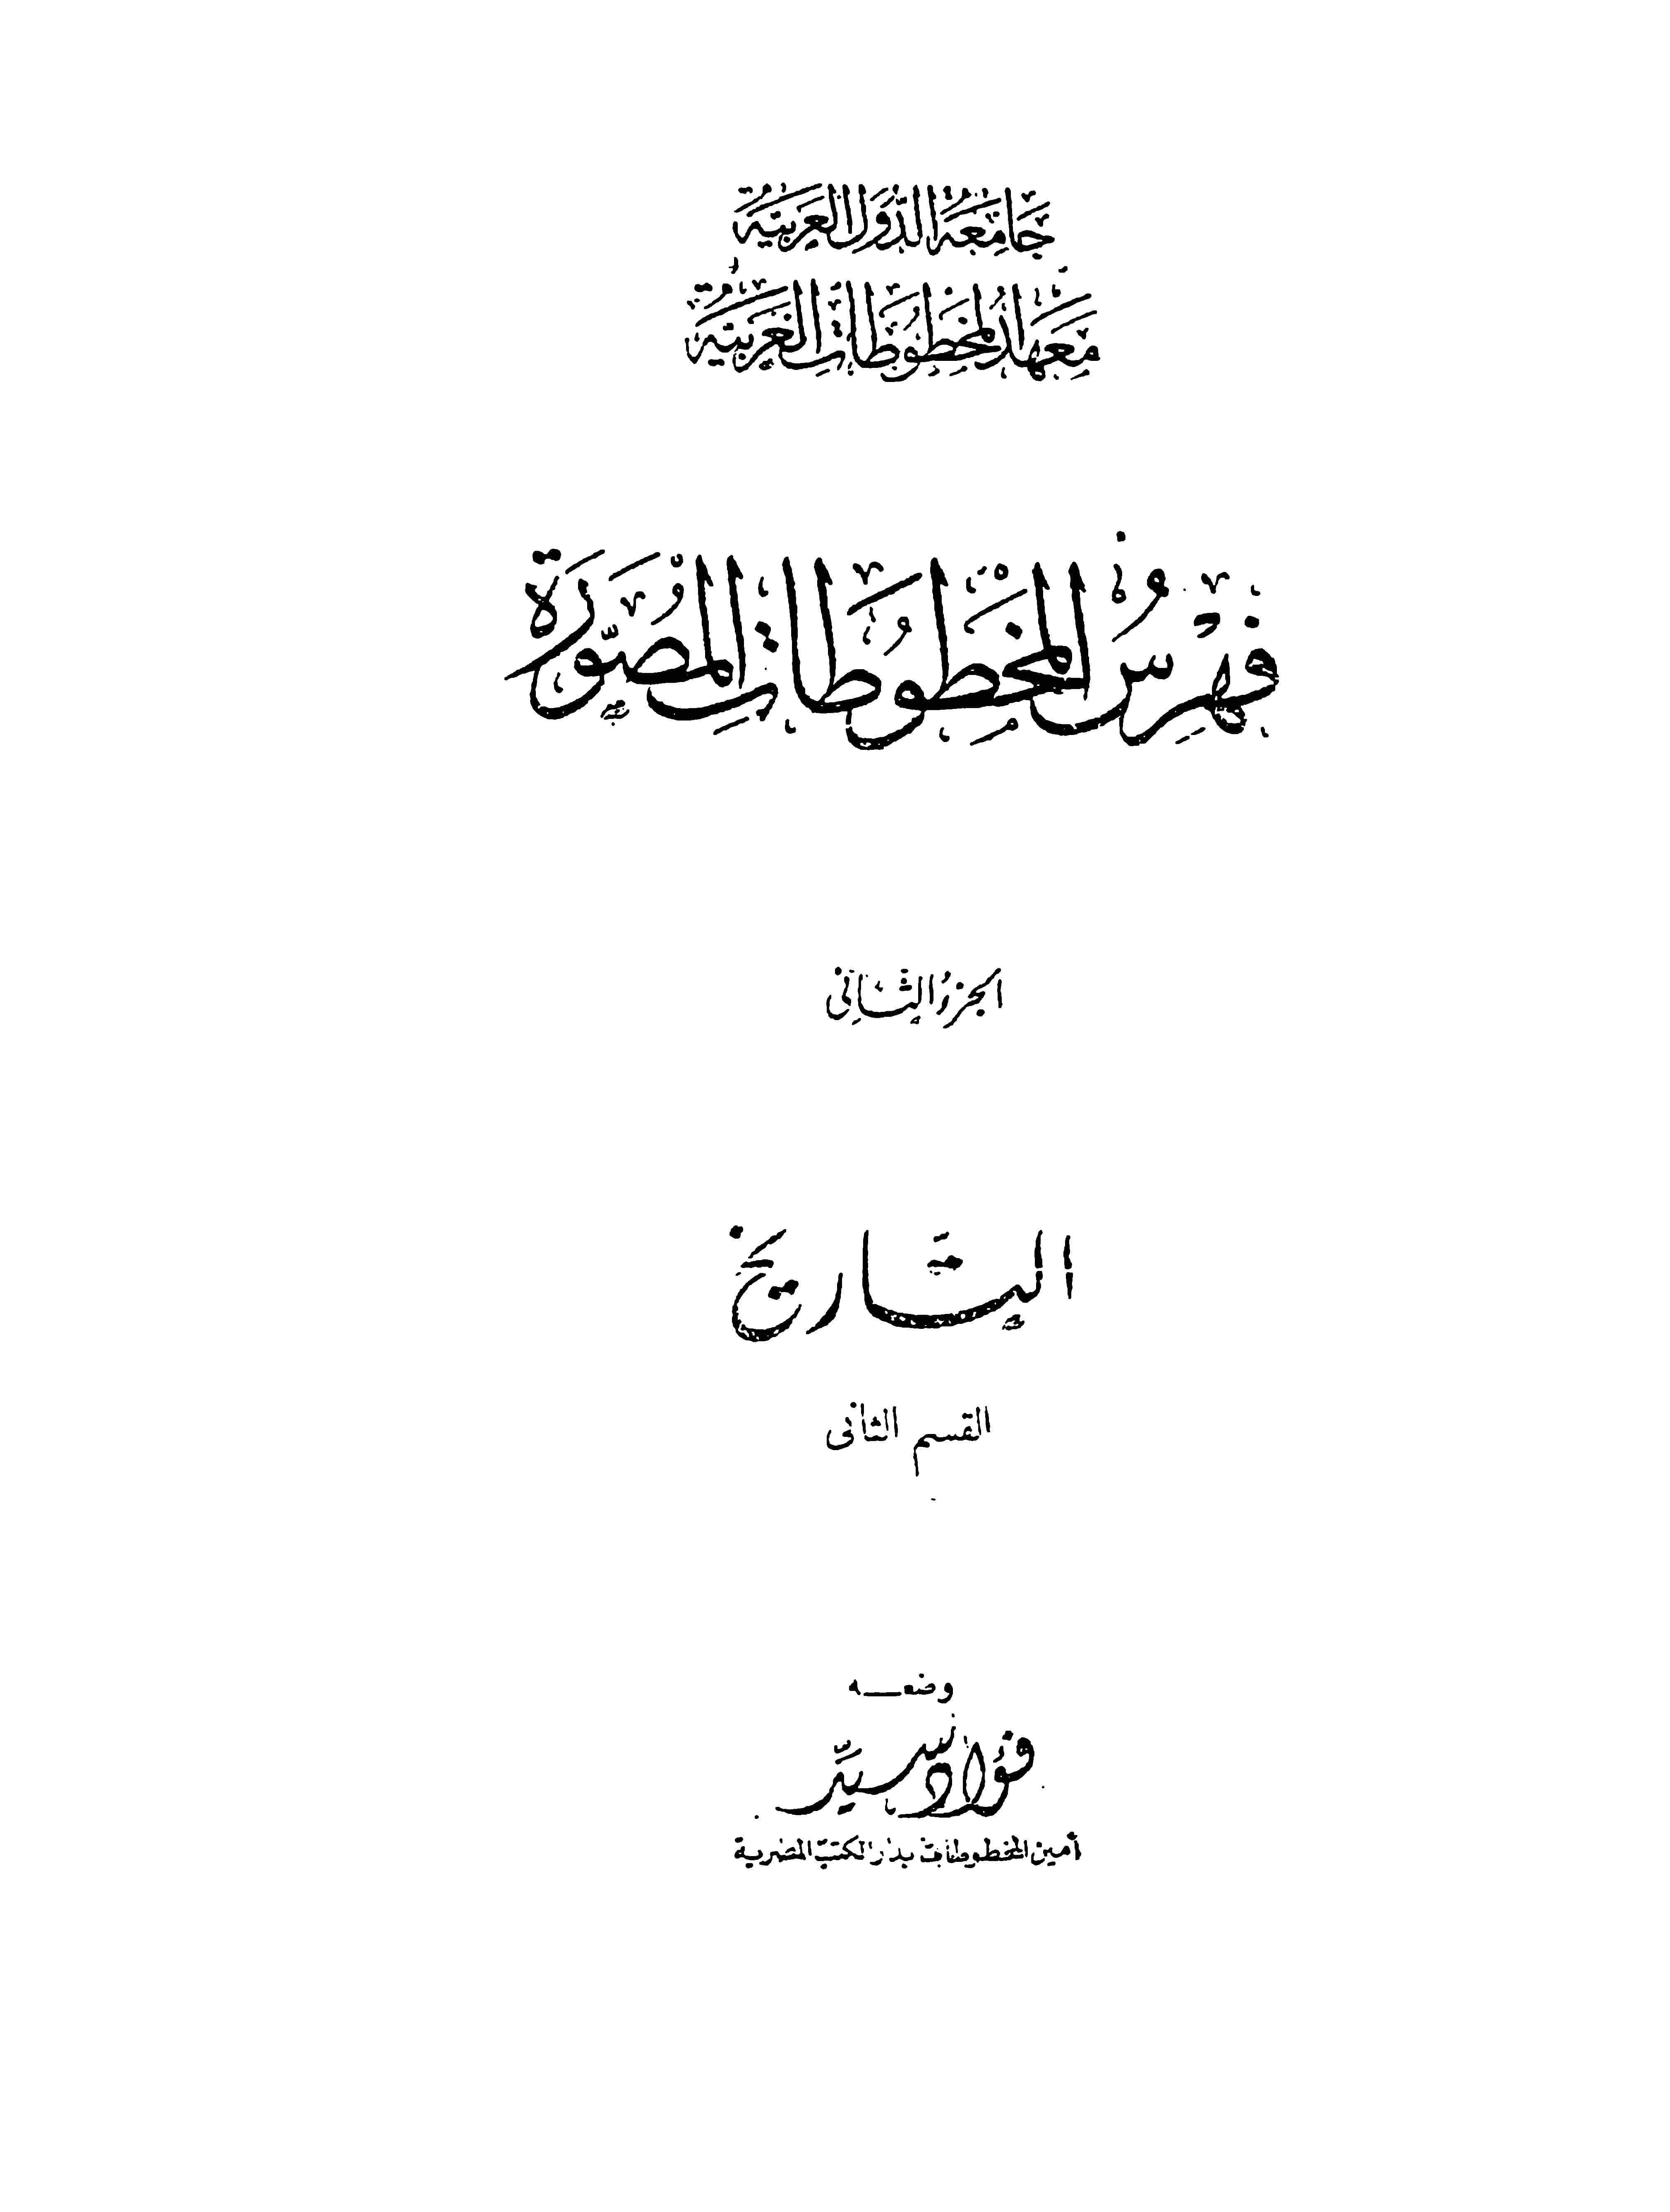 فهرس التاريخ الجزء الثاني، القسم الثاني بمعهد المخطوطات العربية